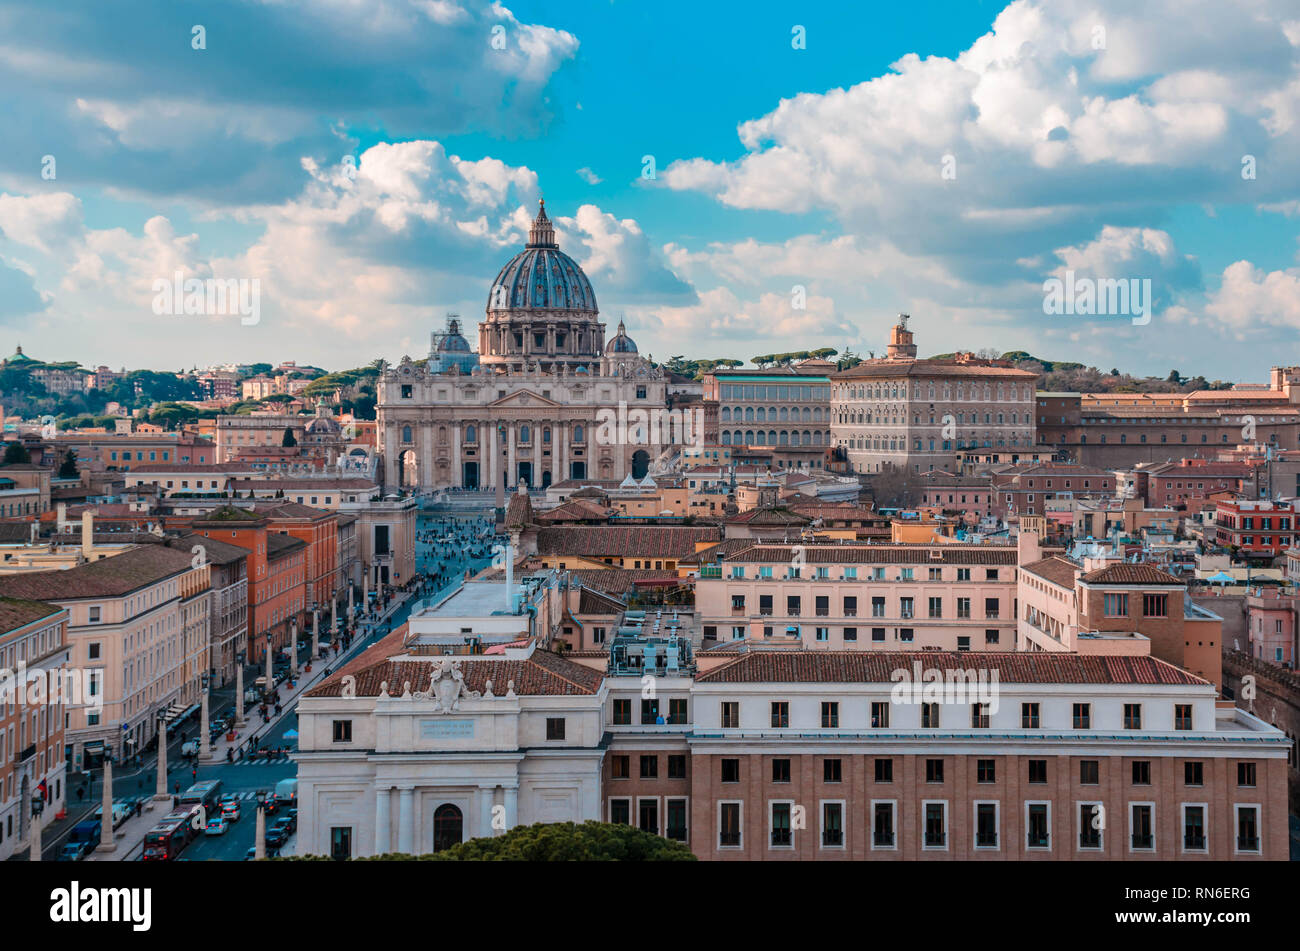 La Basilique St Pierre, l'une des plus grandes églises au monde situé dans la Cité du Vatican Banque D'Images